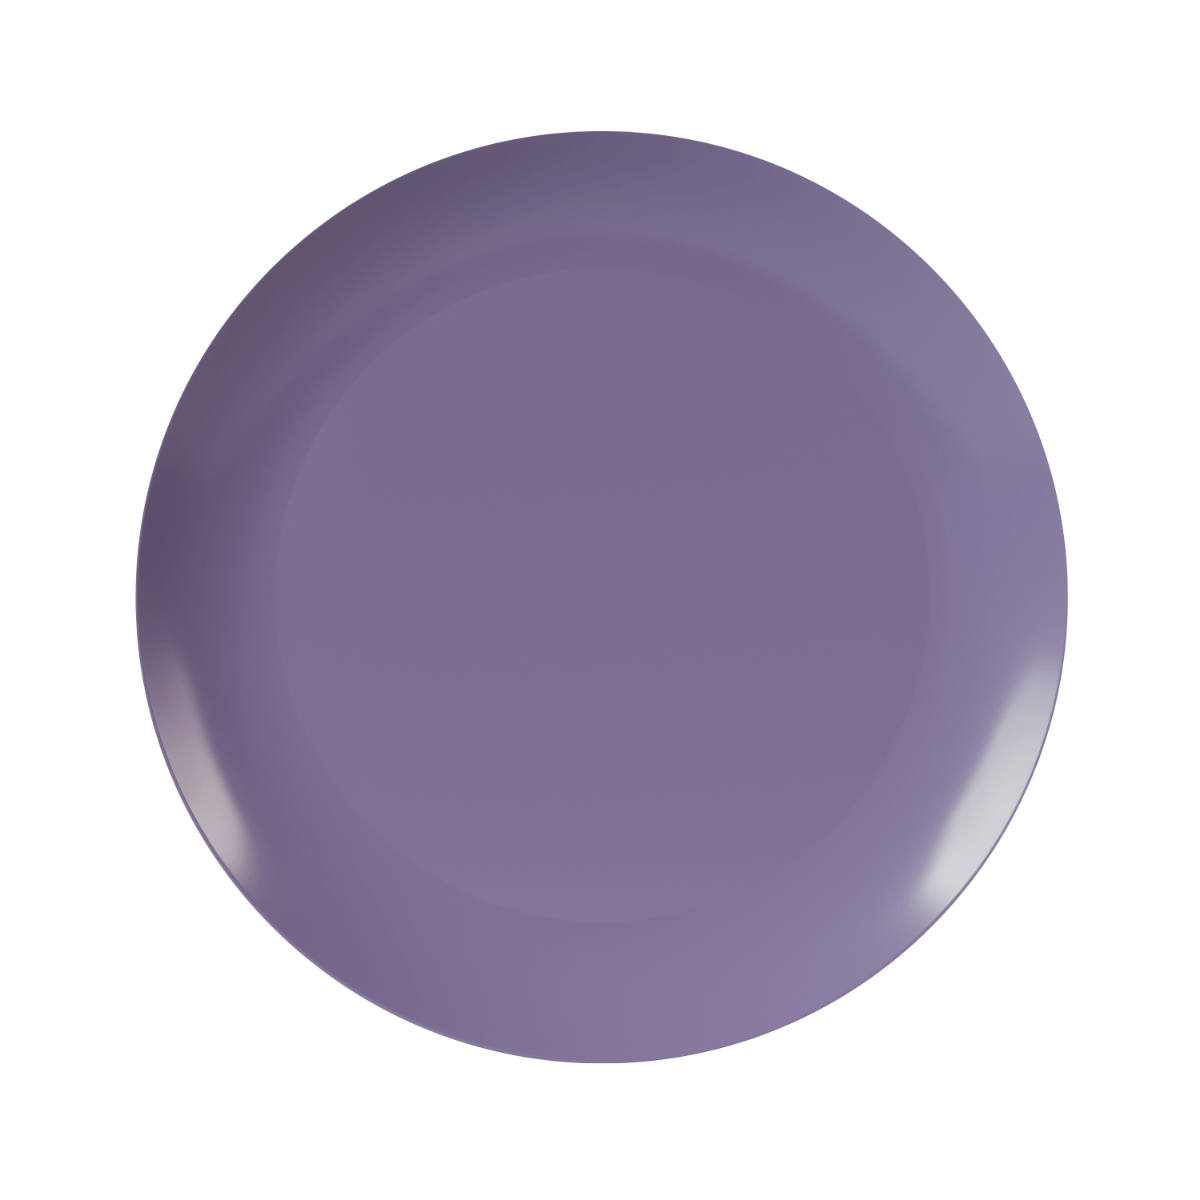 10" Purple Rose Design Plastic Plates (120 Count)